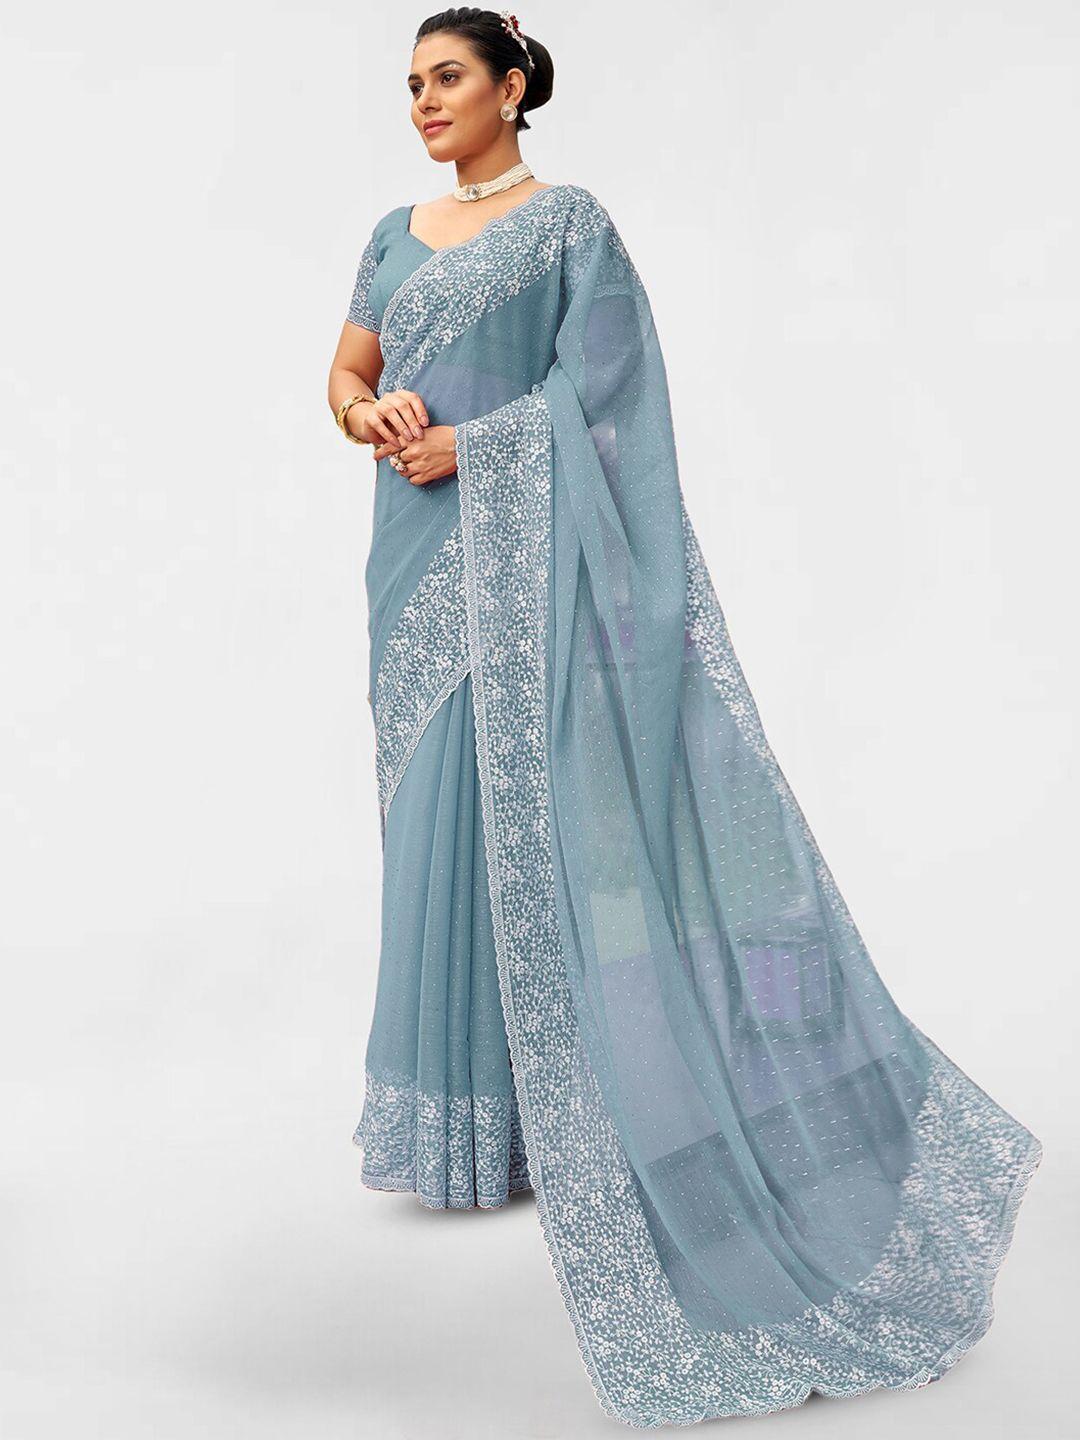 satrani-turquoise-blue-&-white-embellished-beads-and-stones-poly-chiffon-saree